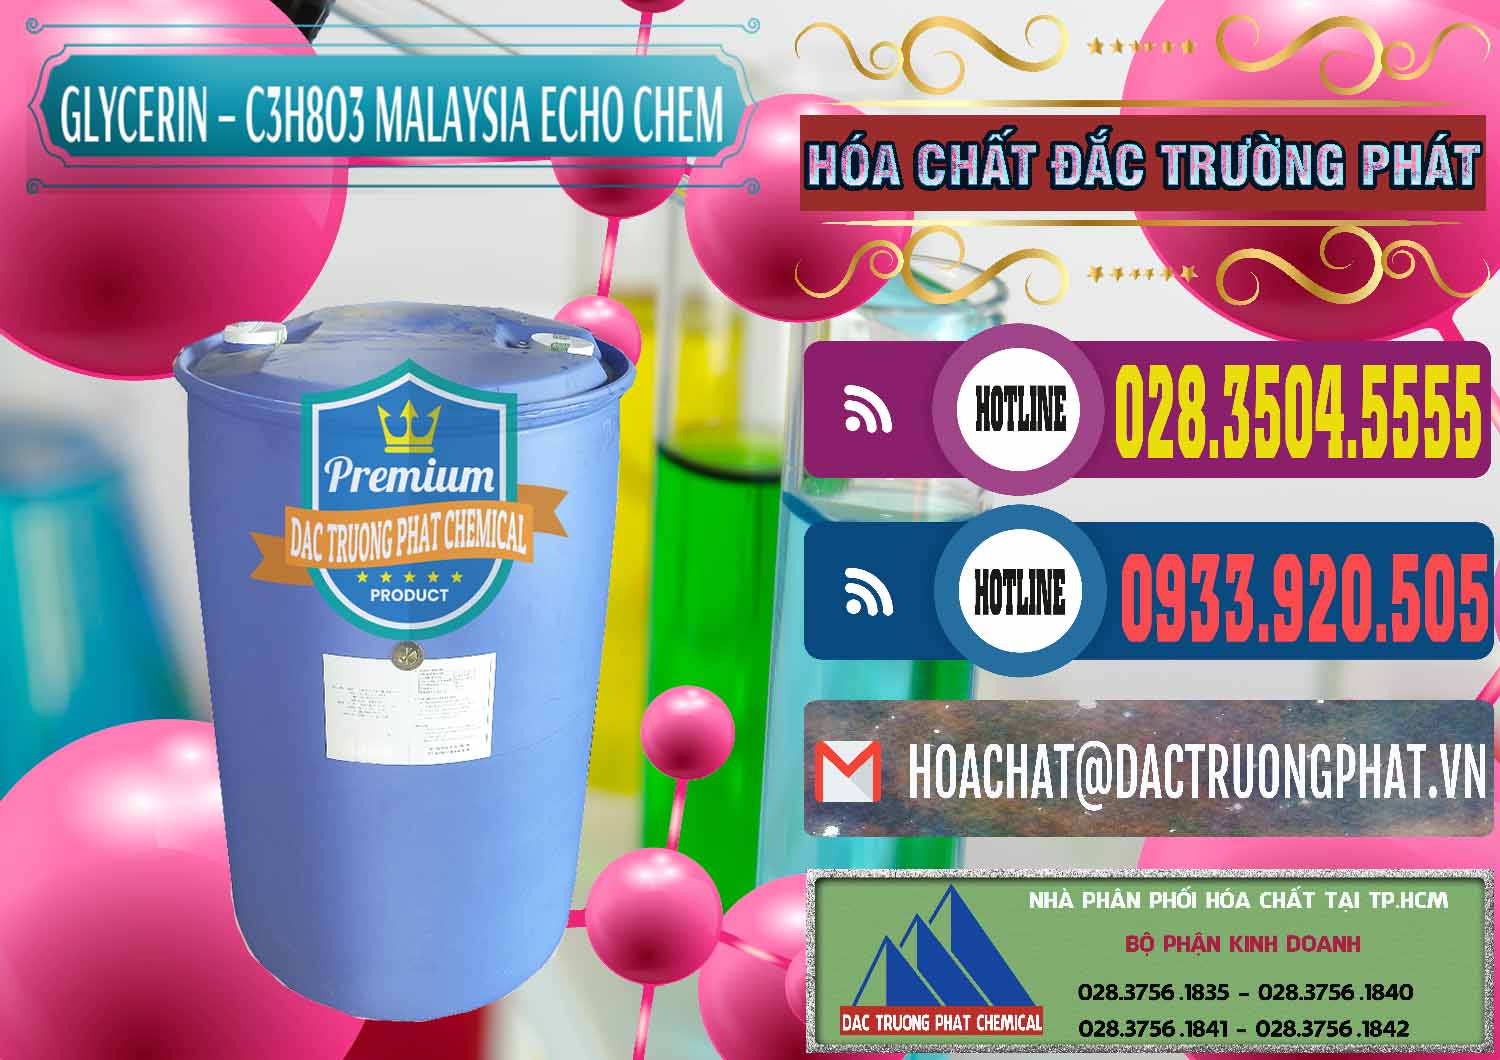 Cung ứng - bán C3H8O3 - Glycerin 99.7% Echo Chem Malaysia - 0273 - Đơn vị phân phối - bán hóa chất tại TP.HCM - muabanhoachat.com.vn